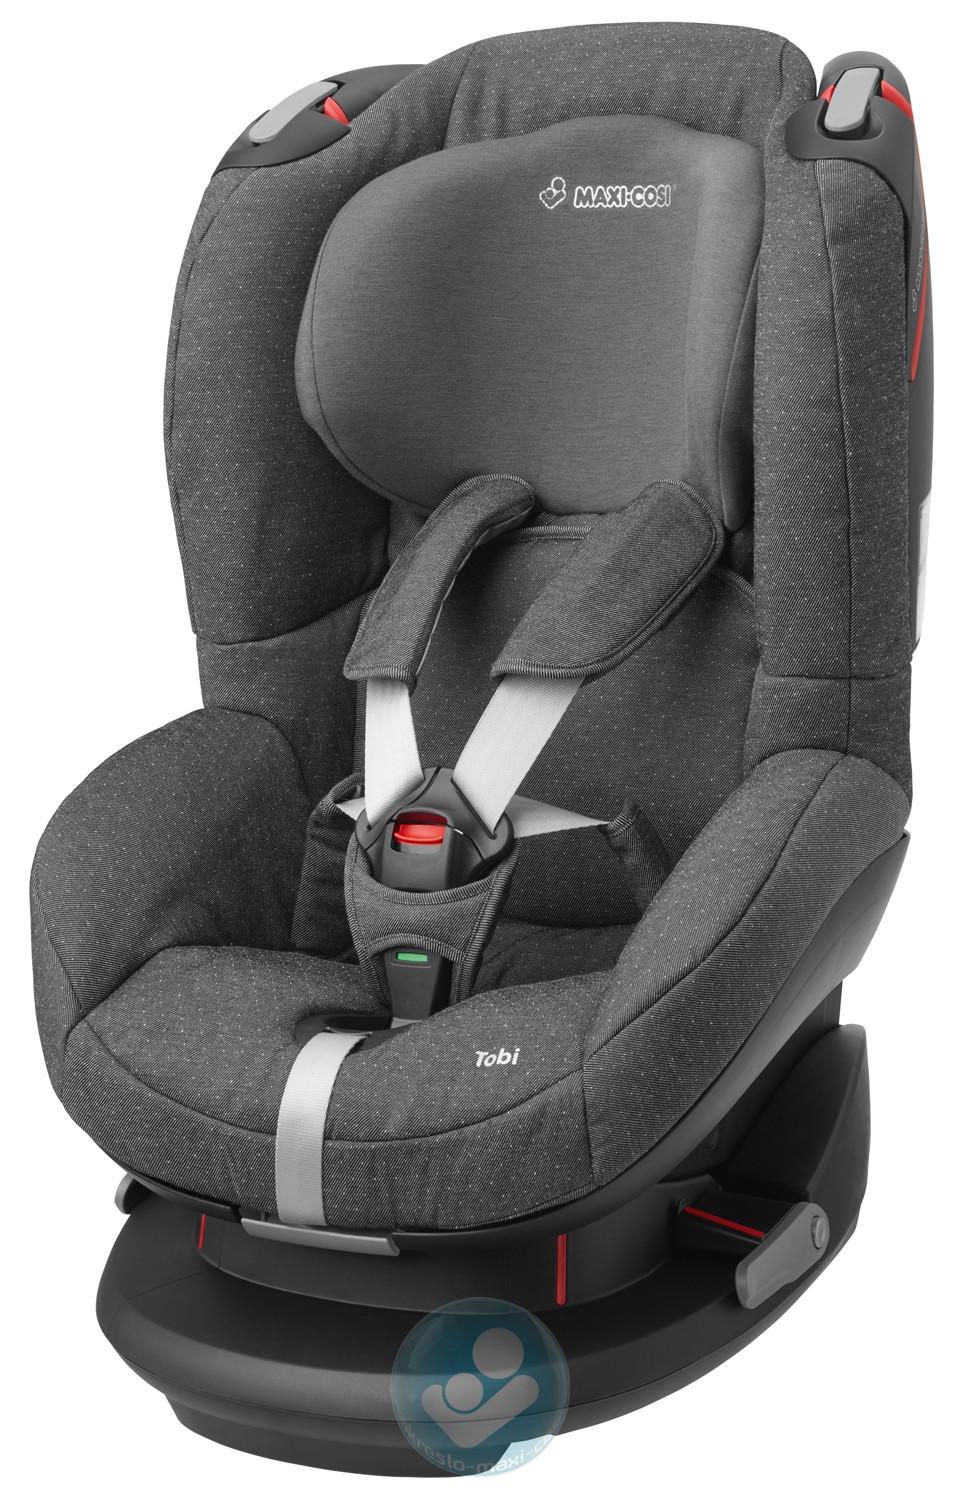 Детское автомобильное кресло Maxi-Cosi Tobi Sparkling Grey